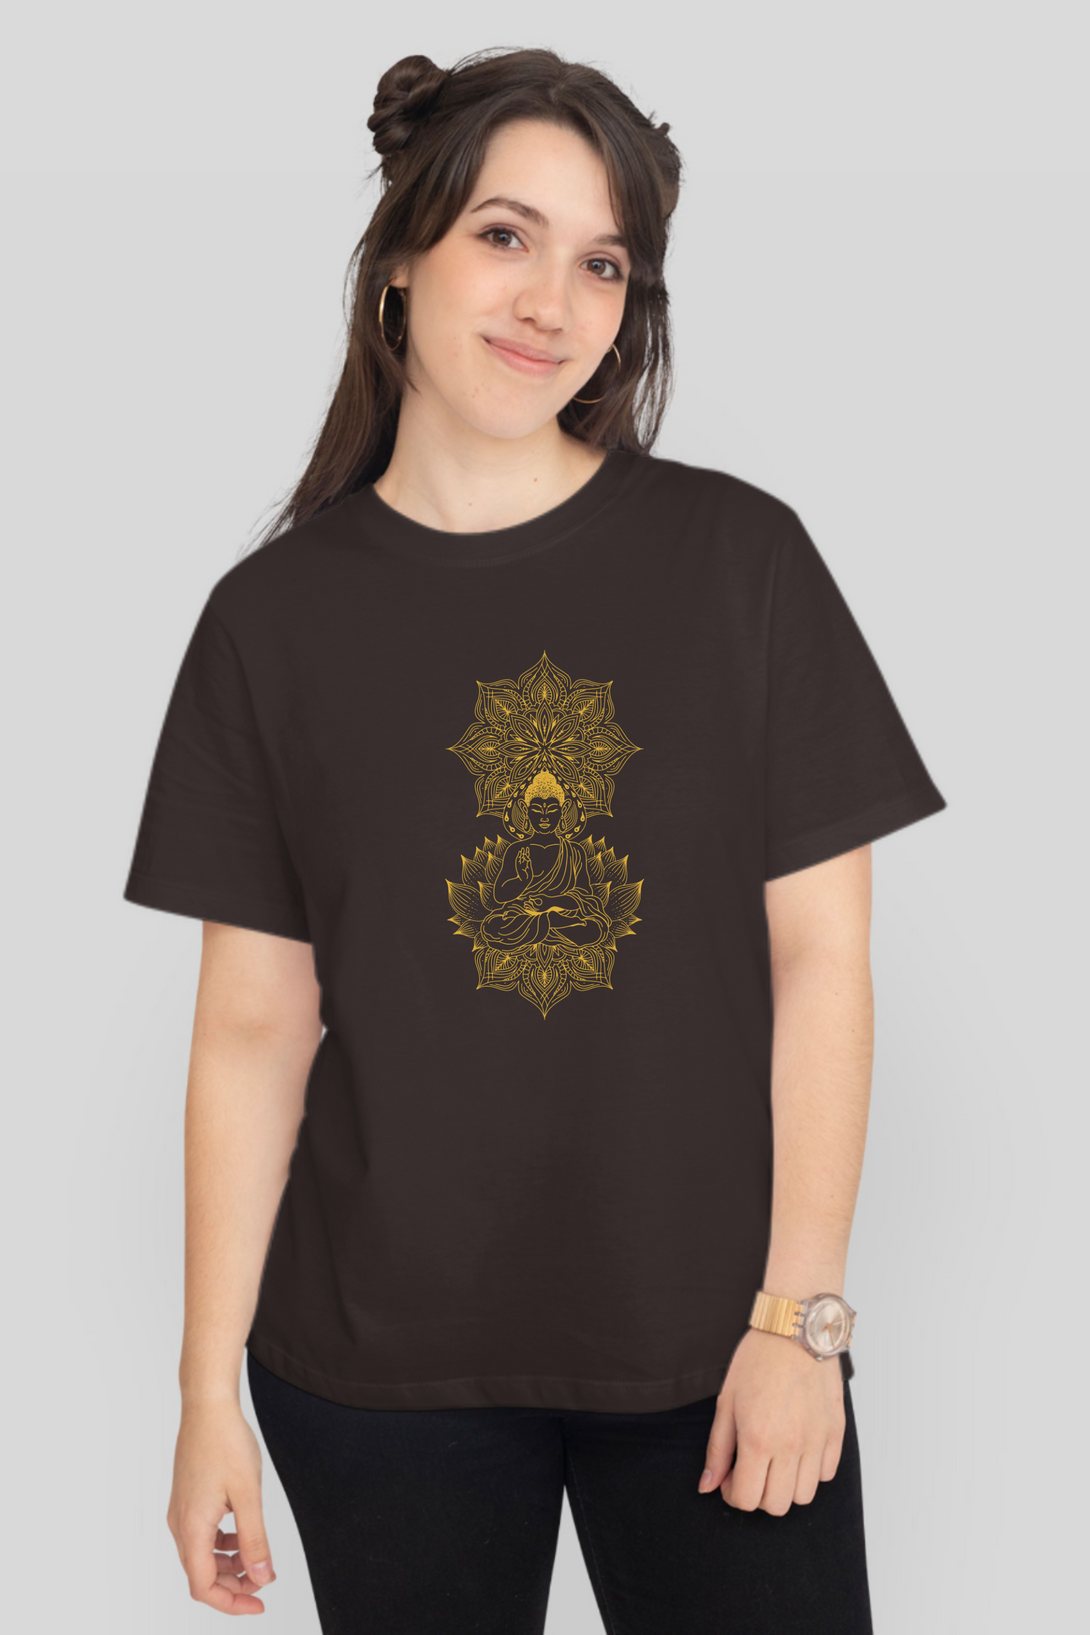 Enlightened Mandala Printed T-Shirt For Women - WowWaves - 7